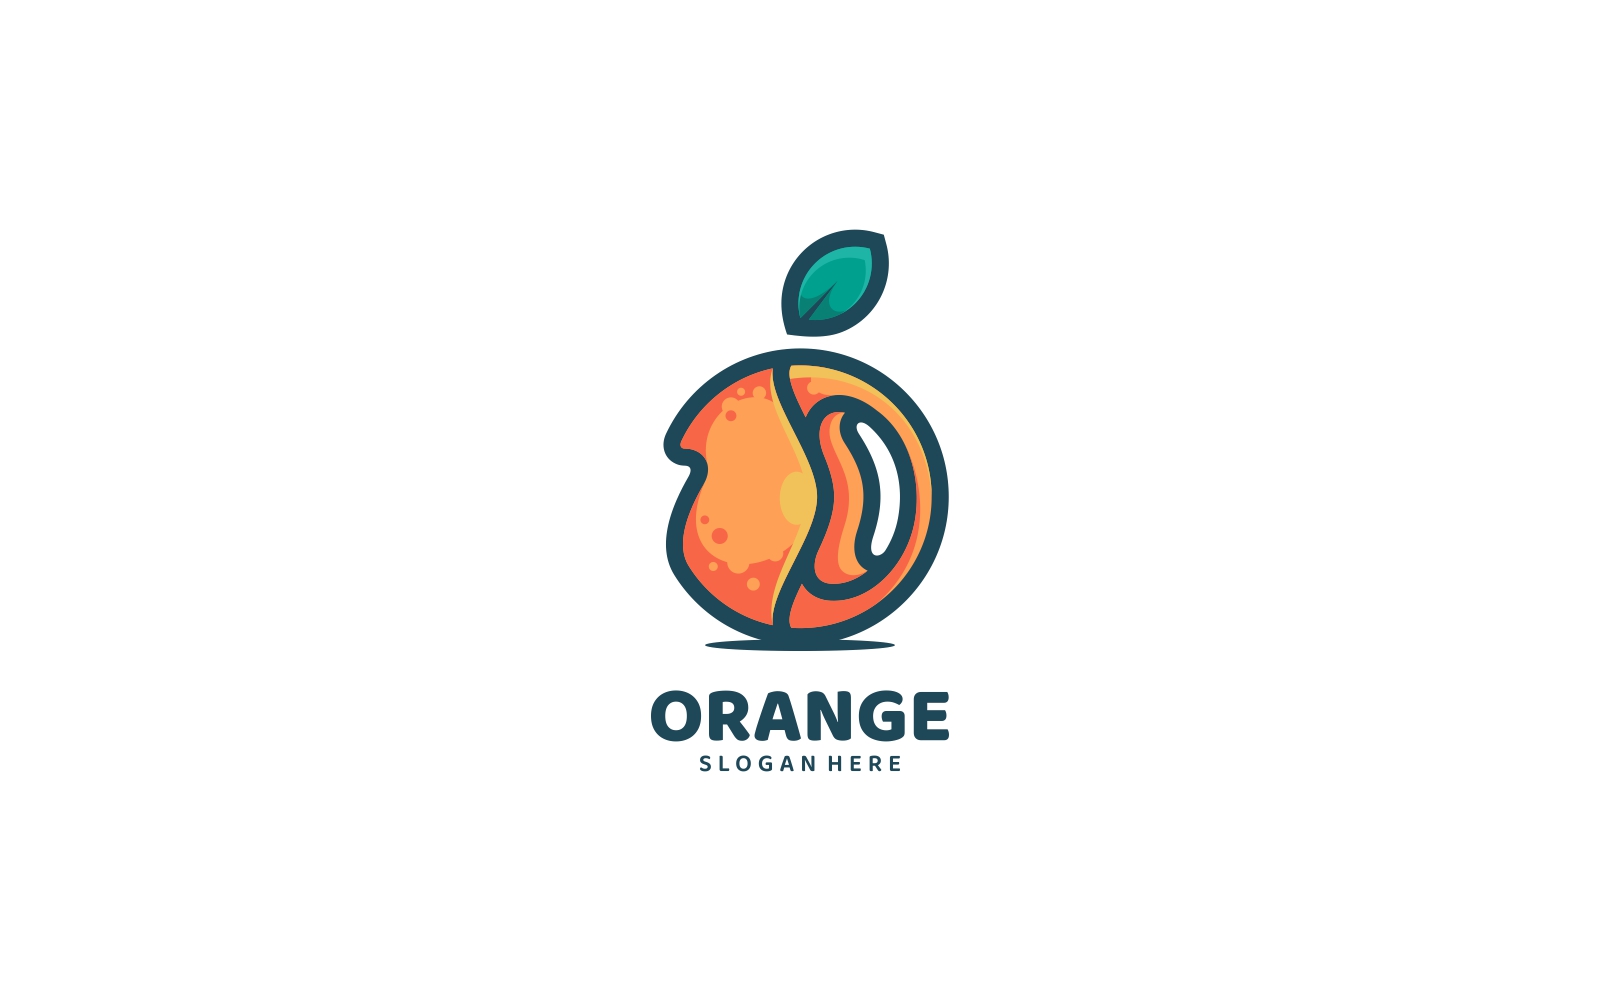 Orange Simple Mascot Logo Design